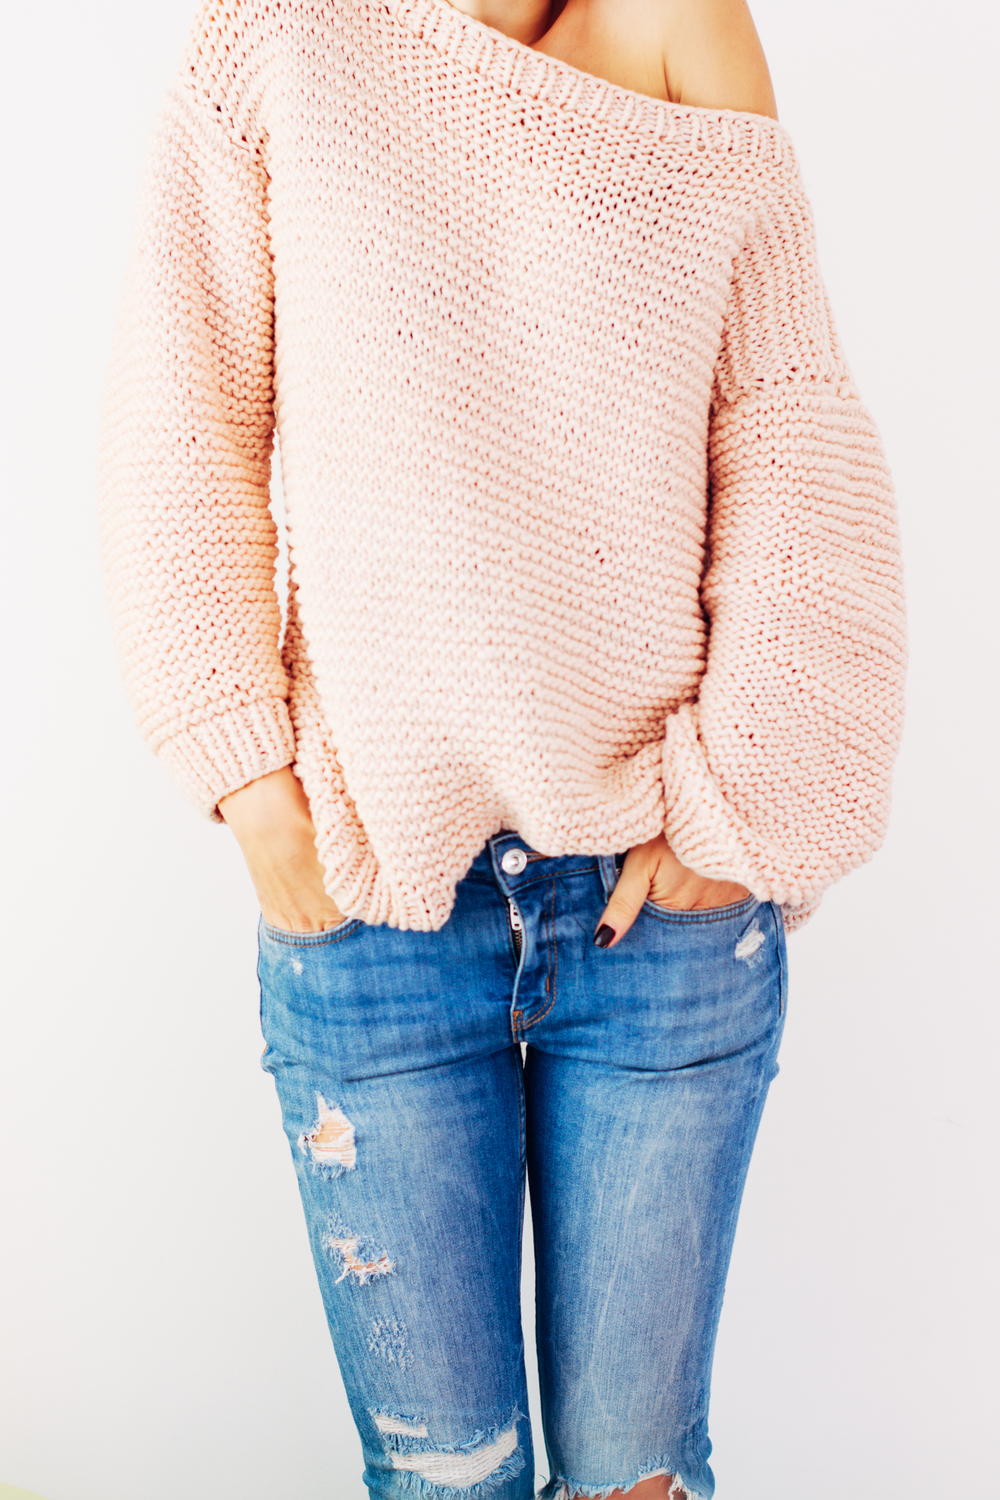 Peachy Keen Oversize Knitted Sweater | AllFreeKnitting.com